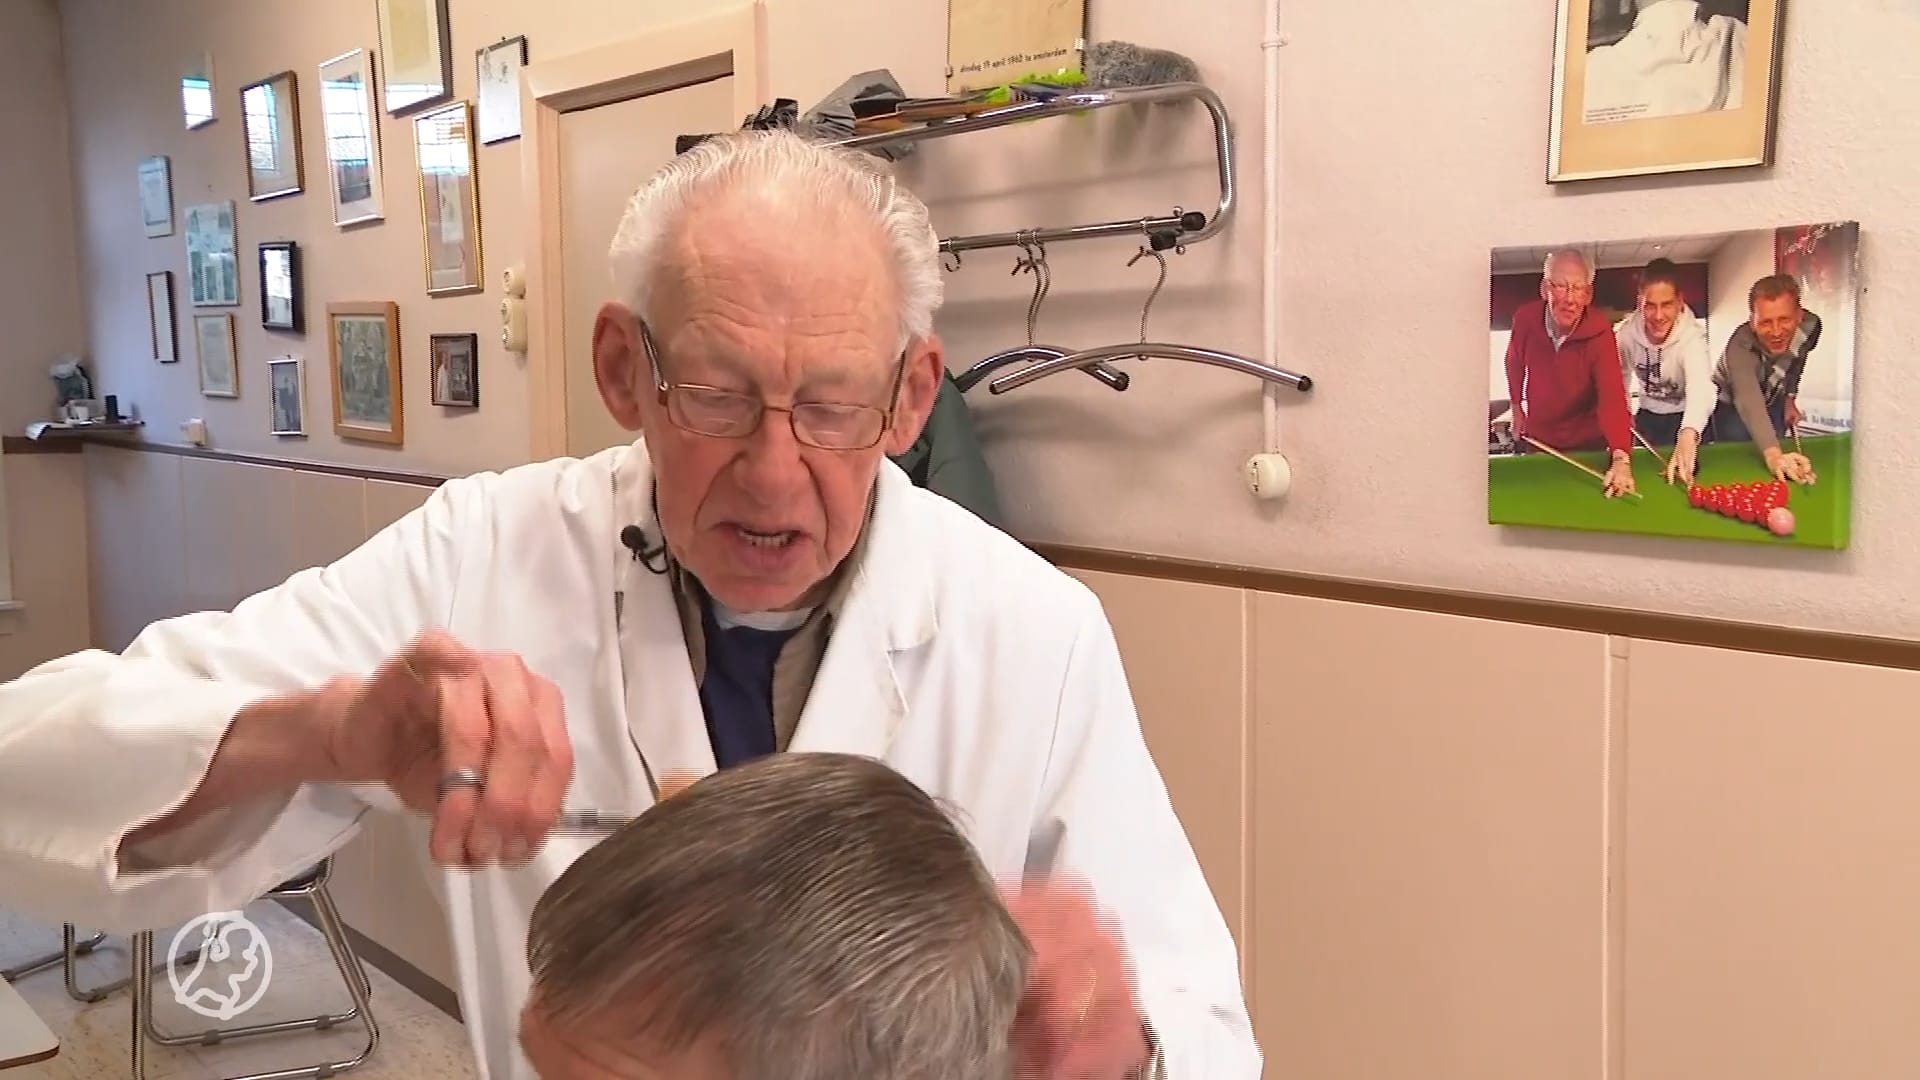 Doorwerken na je pensioen? 88-jarige kapper Henk doet niets liever